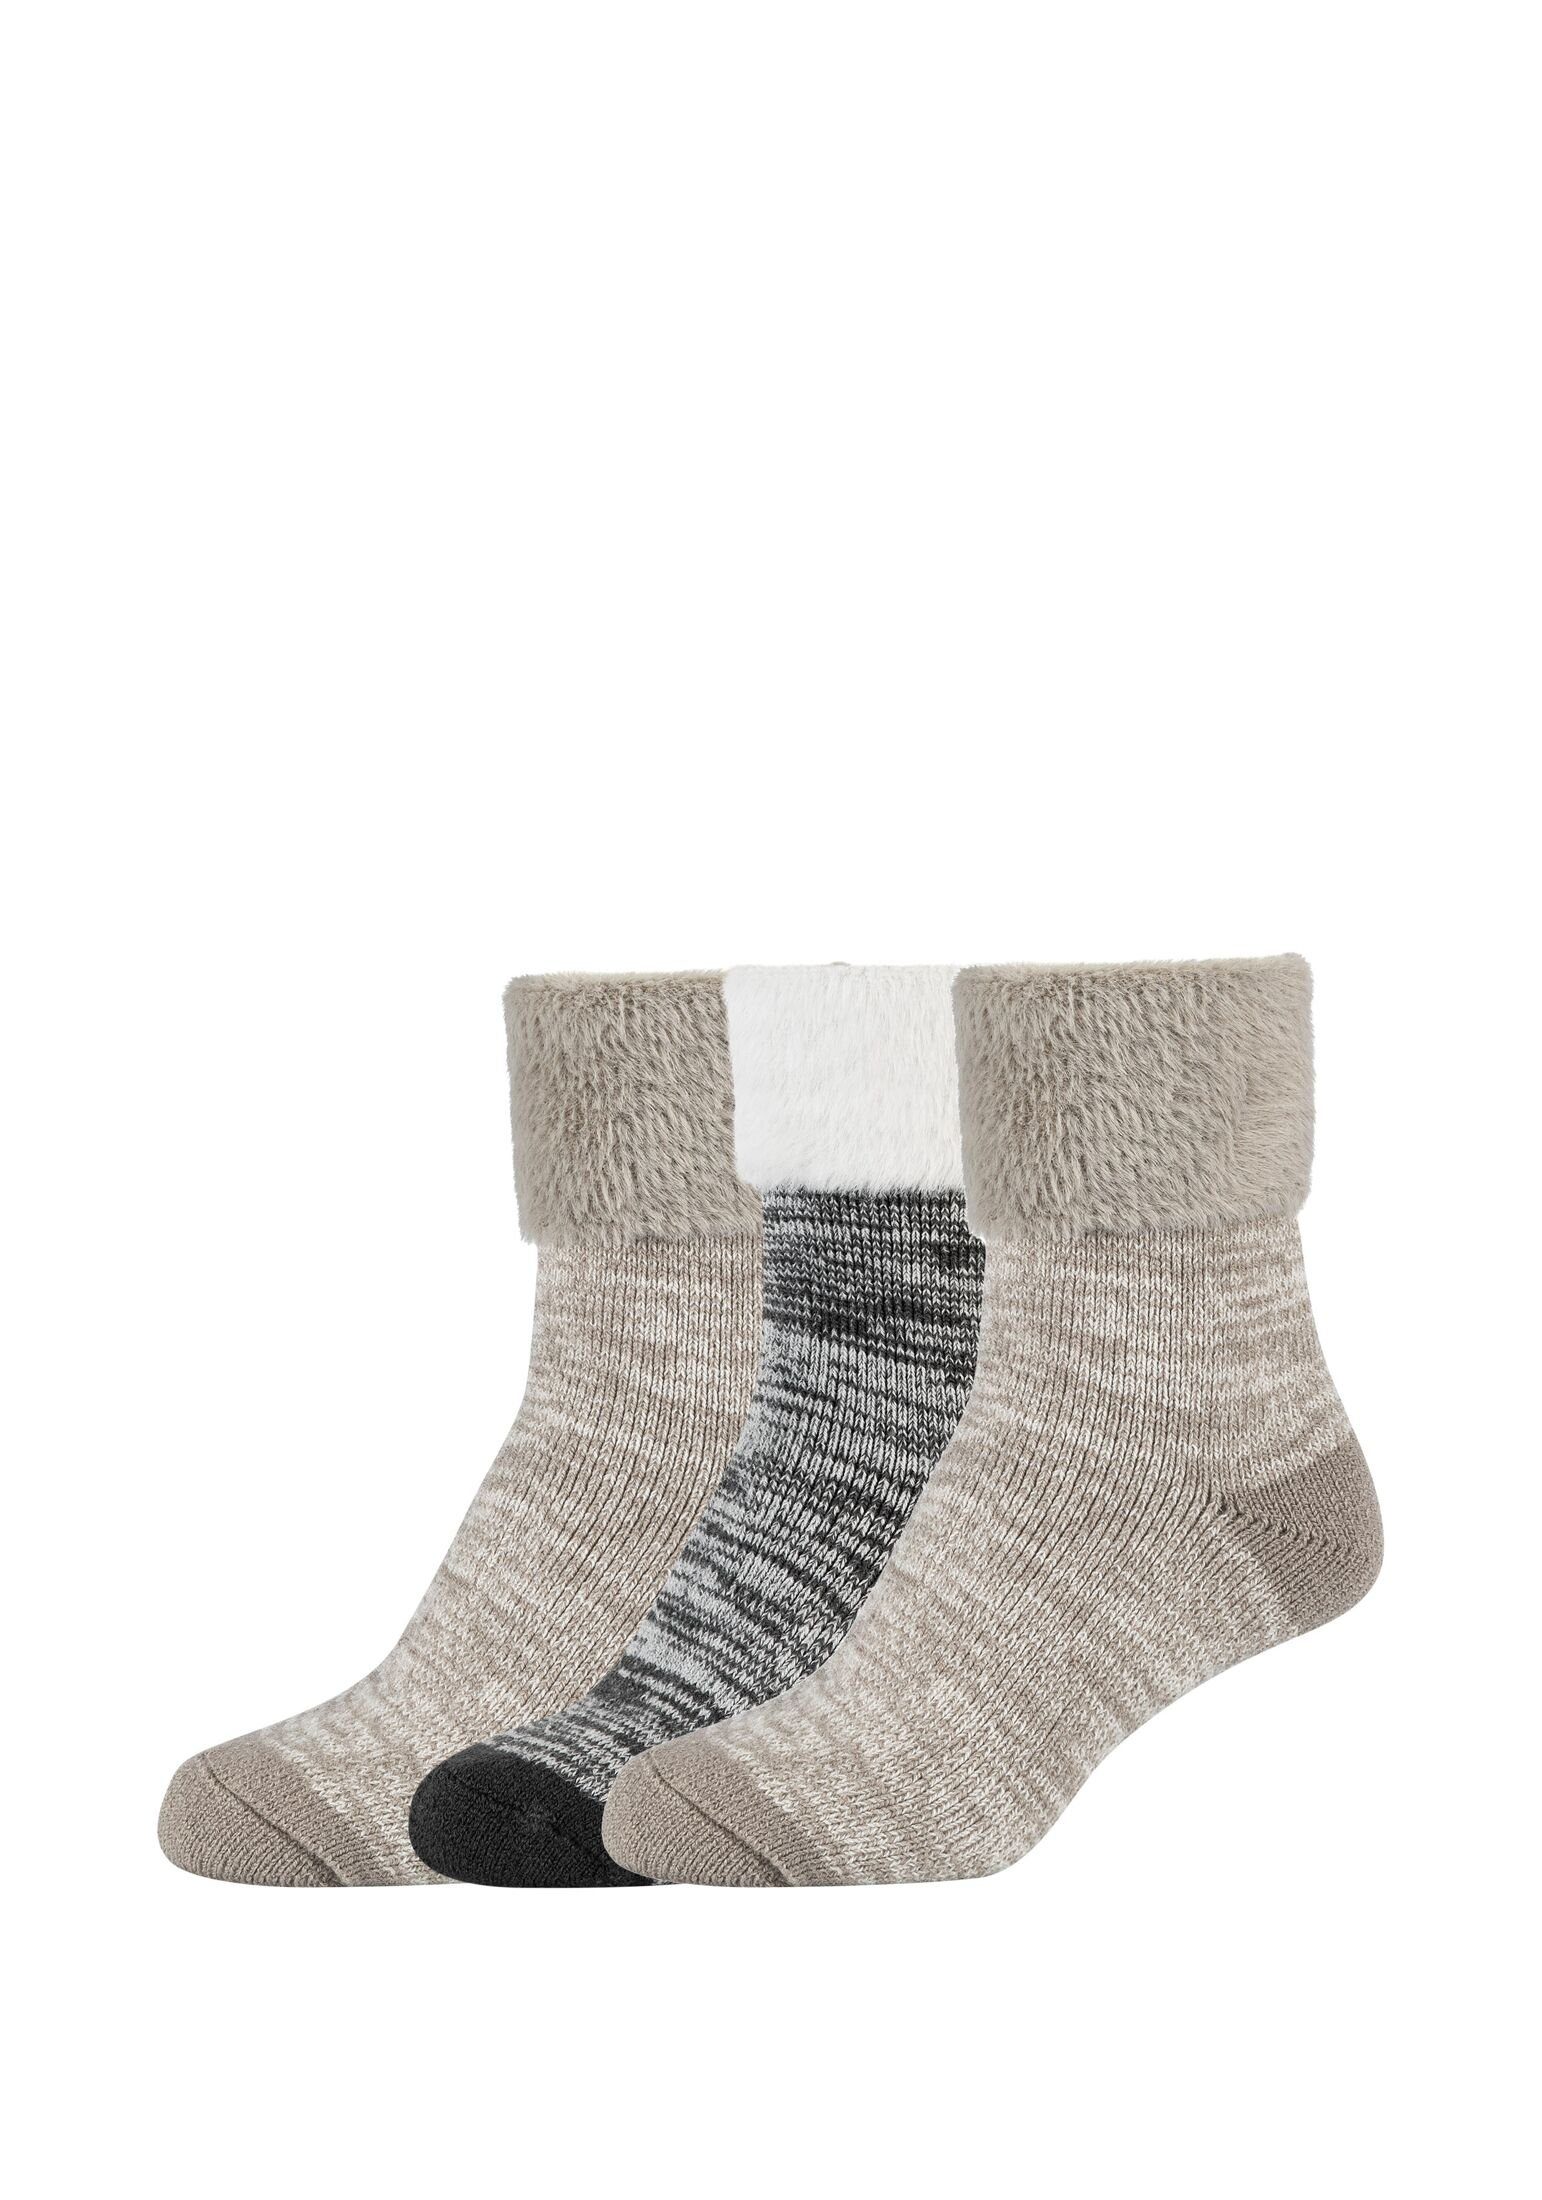 Camano Socken Socken 3er Pack taupe